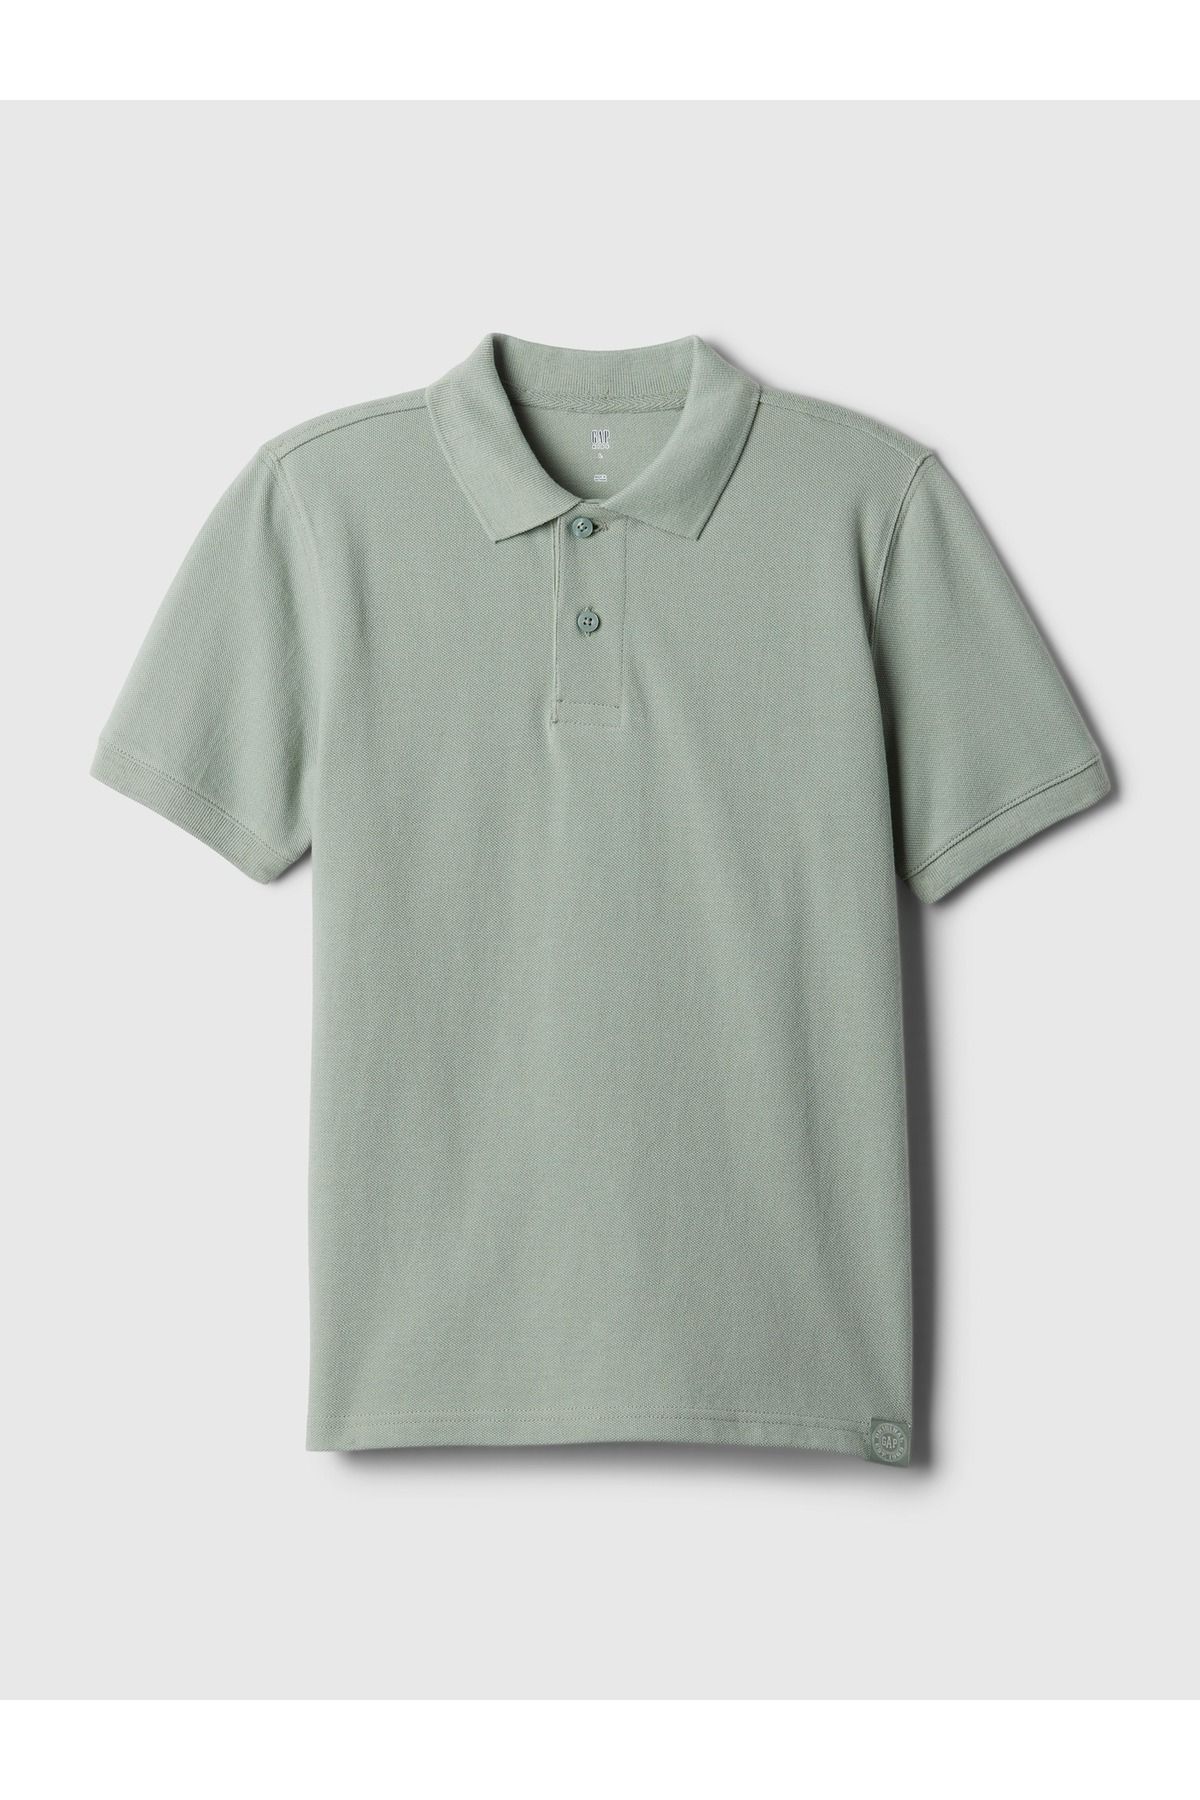 GAP Erkek Çocuk Yeşil Pique Polo Yaka T-Shirt